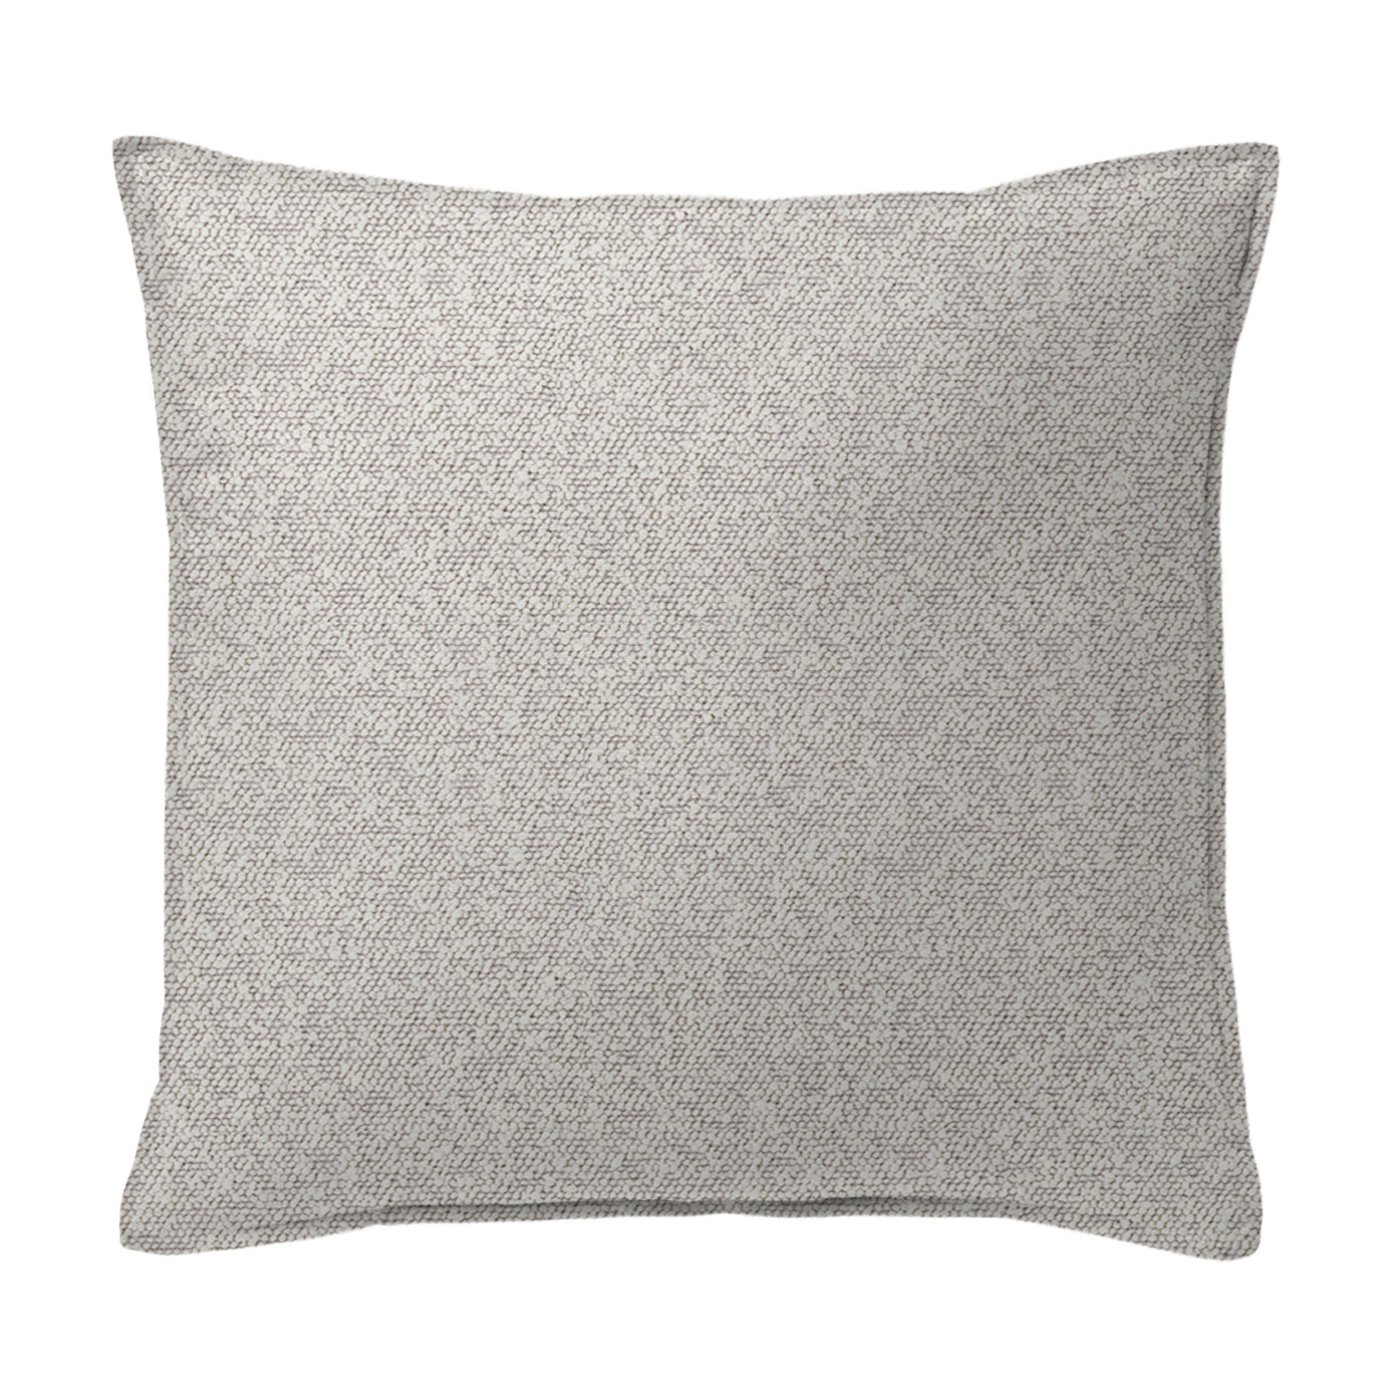 Jackson Boucle Cream Decorative Pillow - Size 24" Square